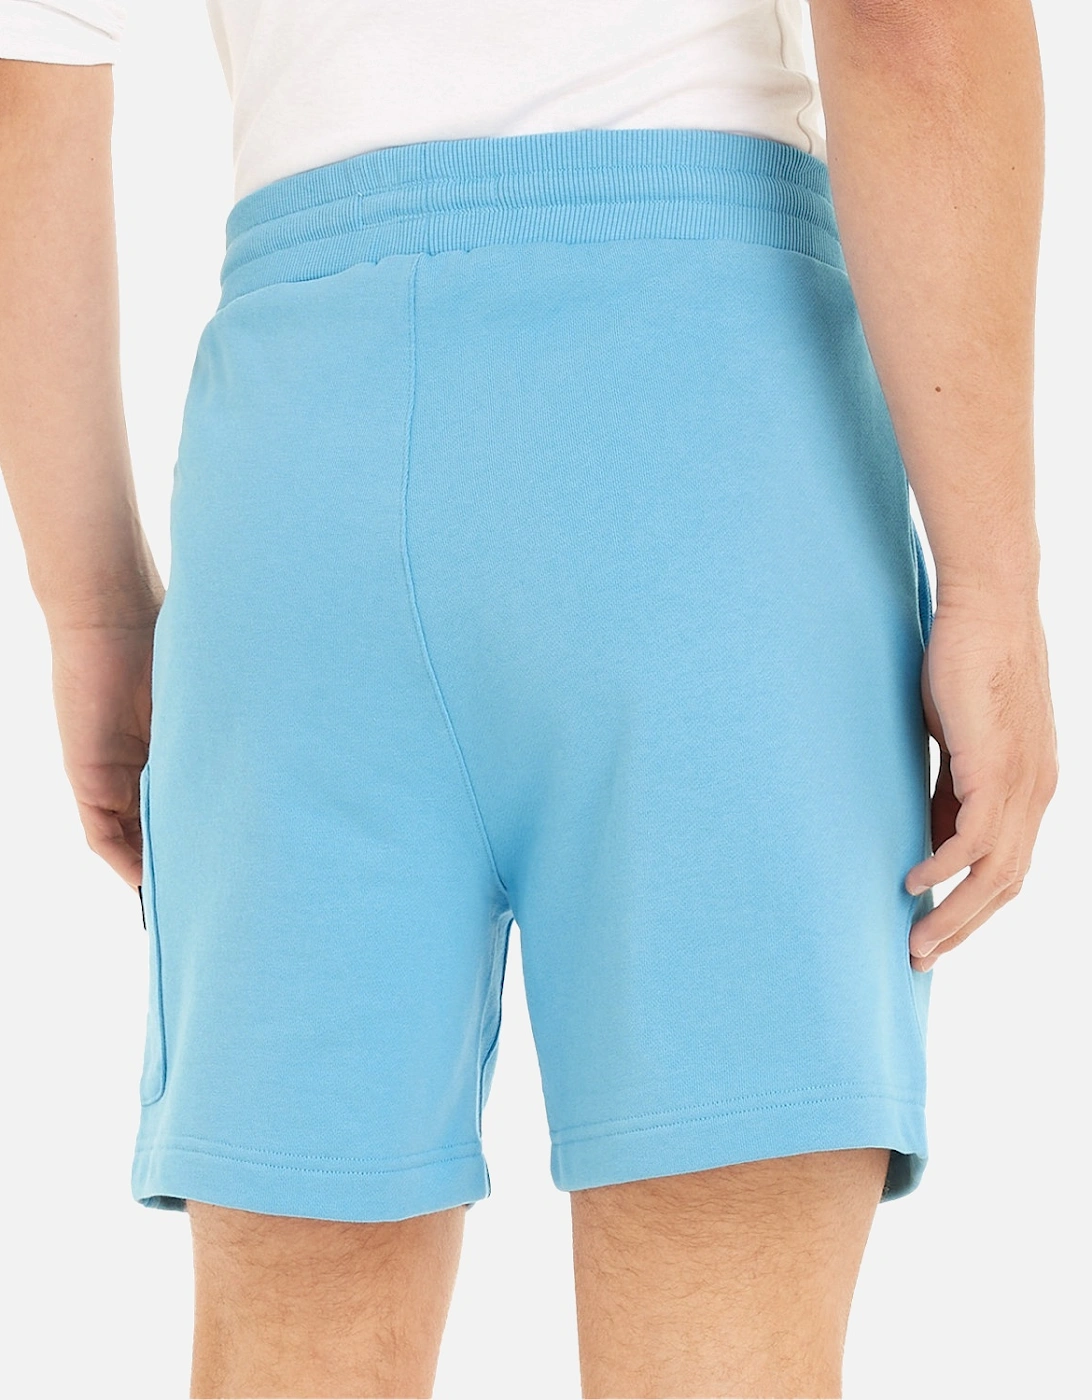 Mens Cargo Beach Shorts (Blue)